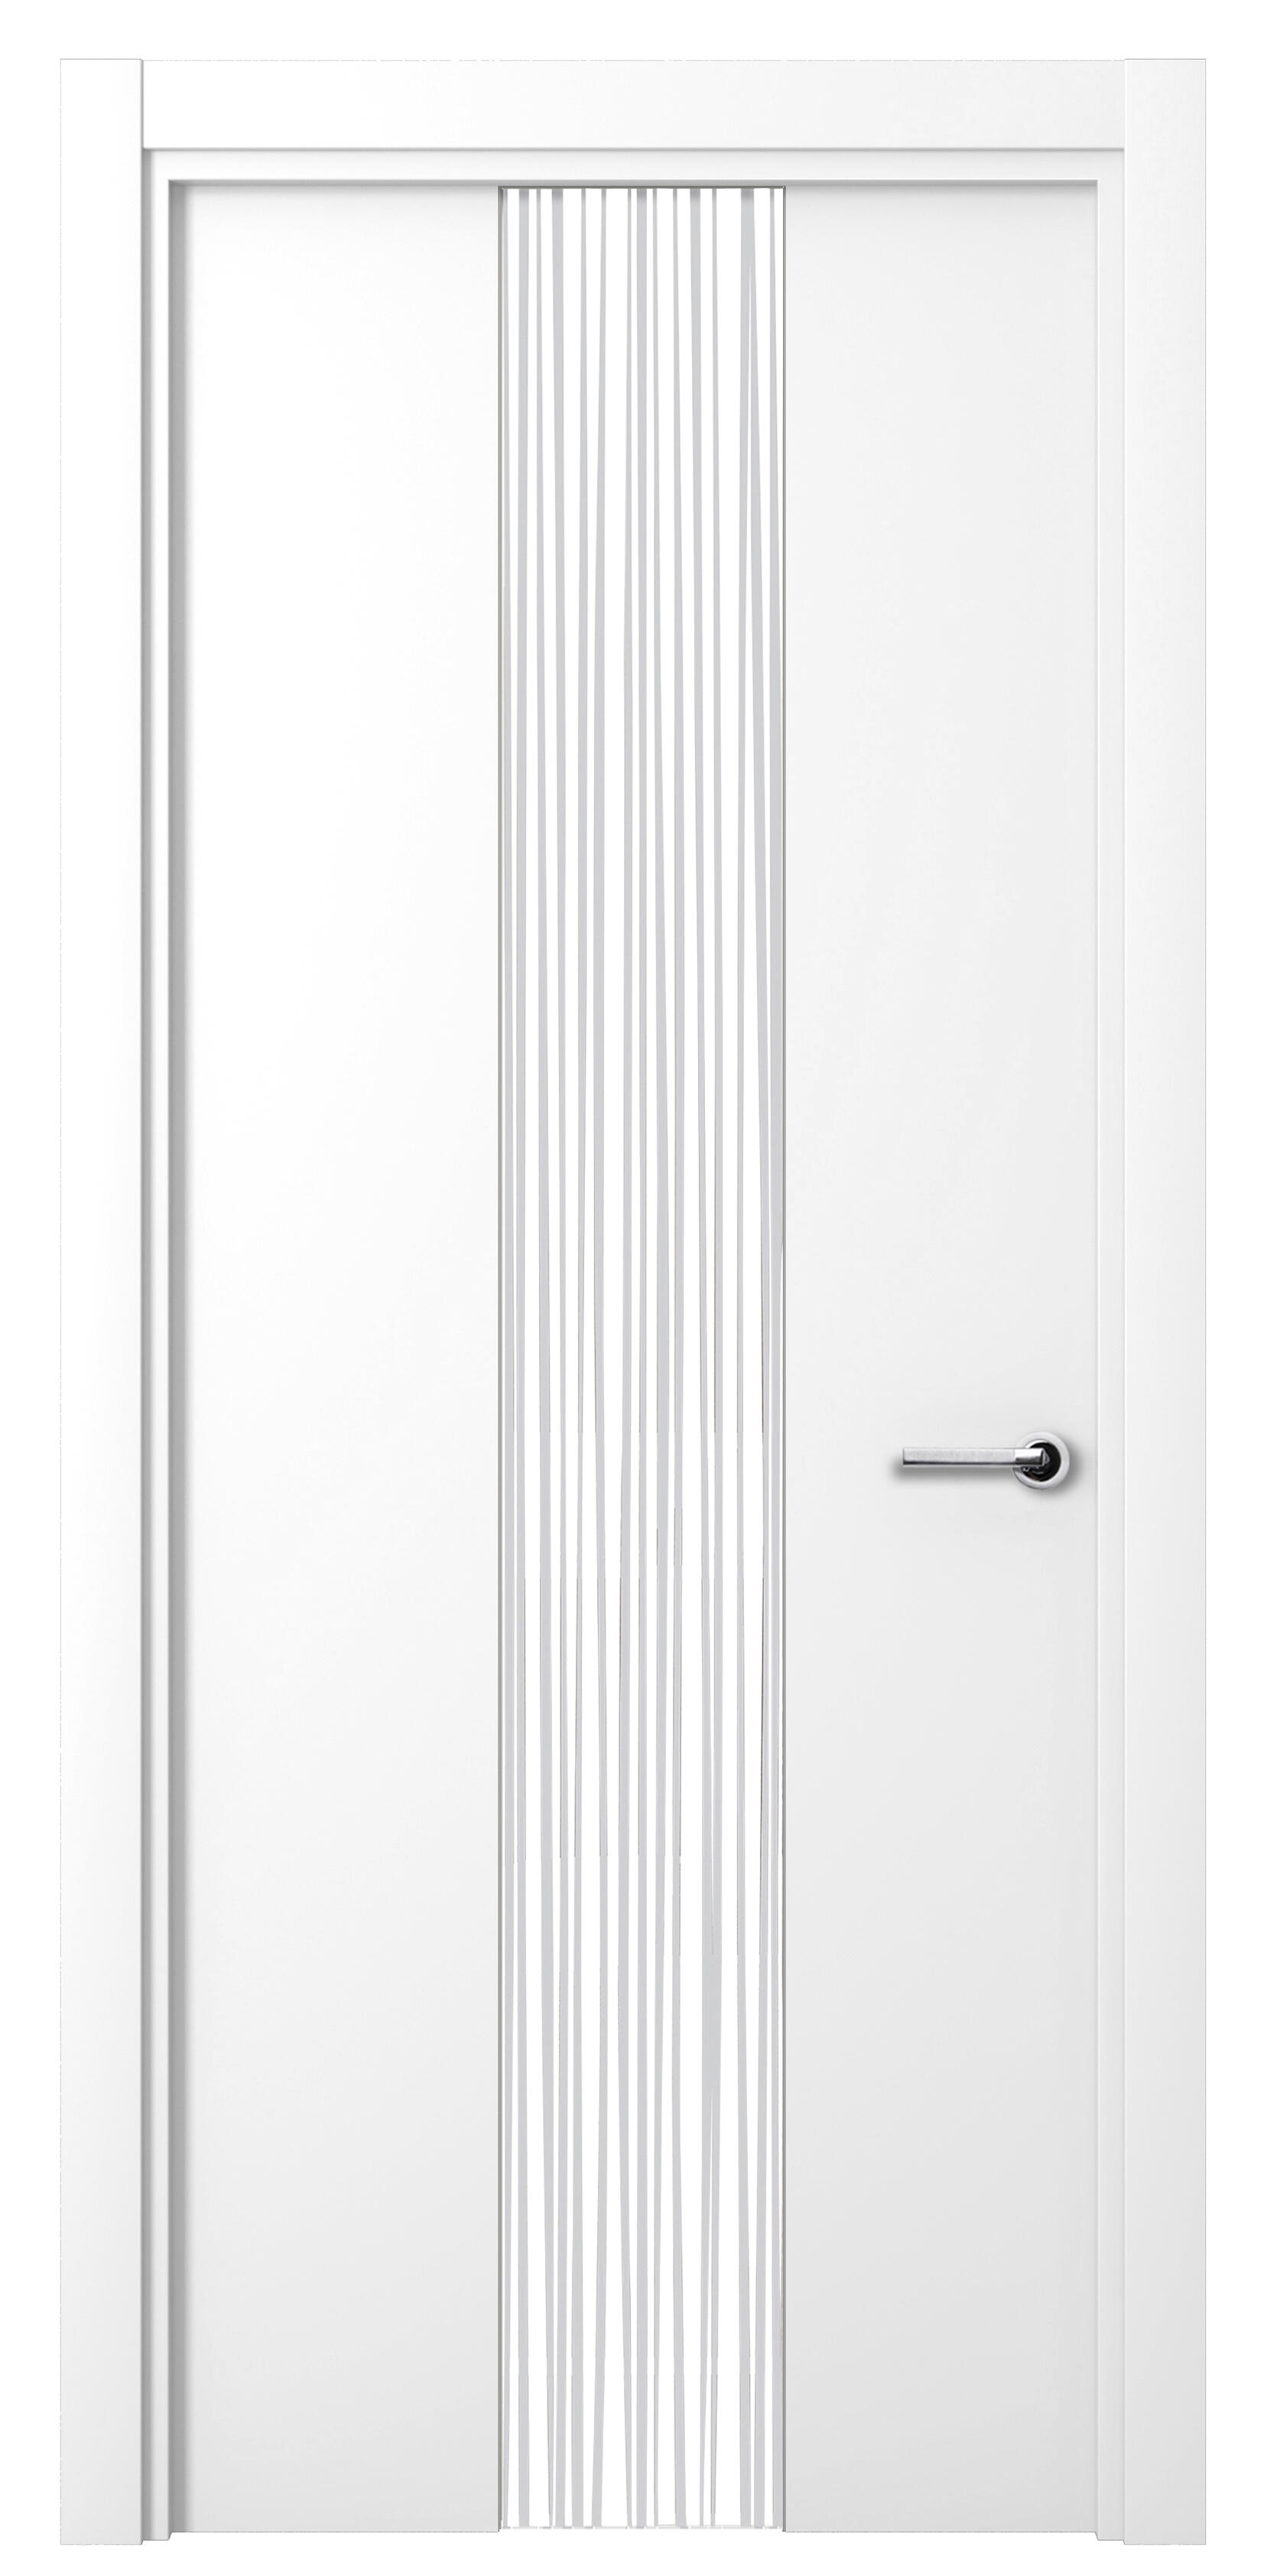 Puerta quevedo premium blanco apertura izquierda con cristal 9x72.5cm